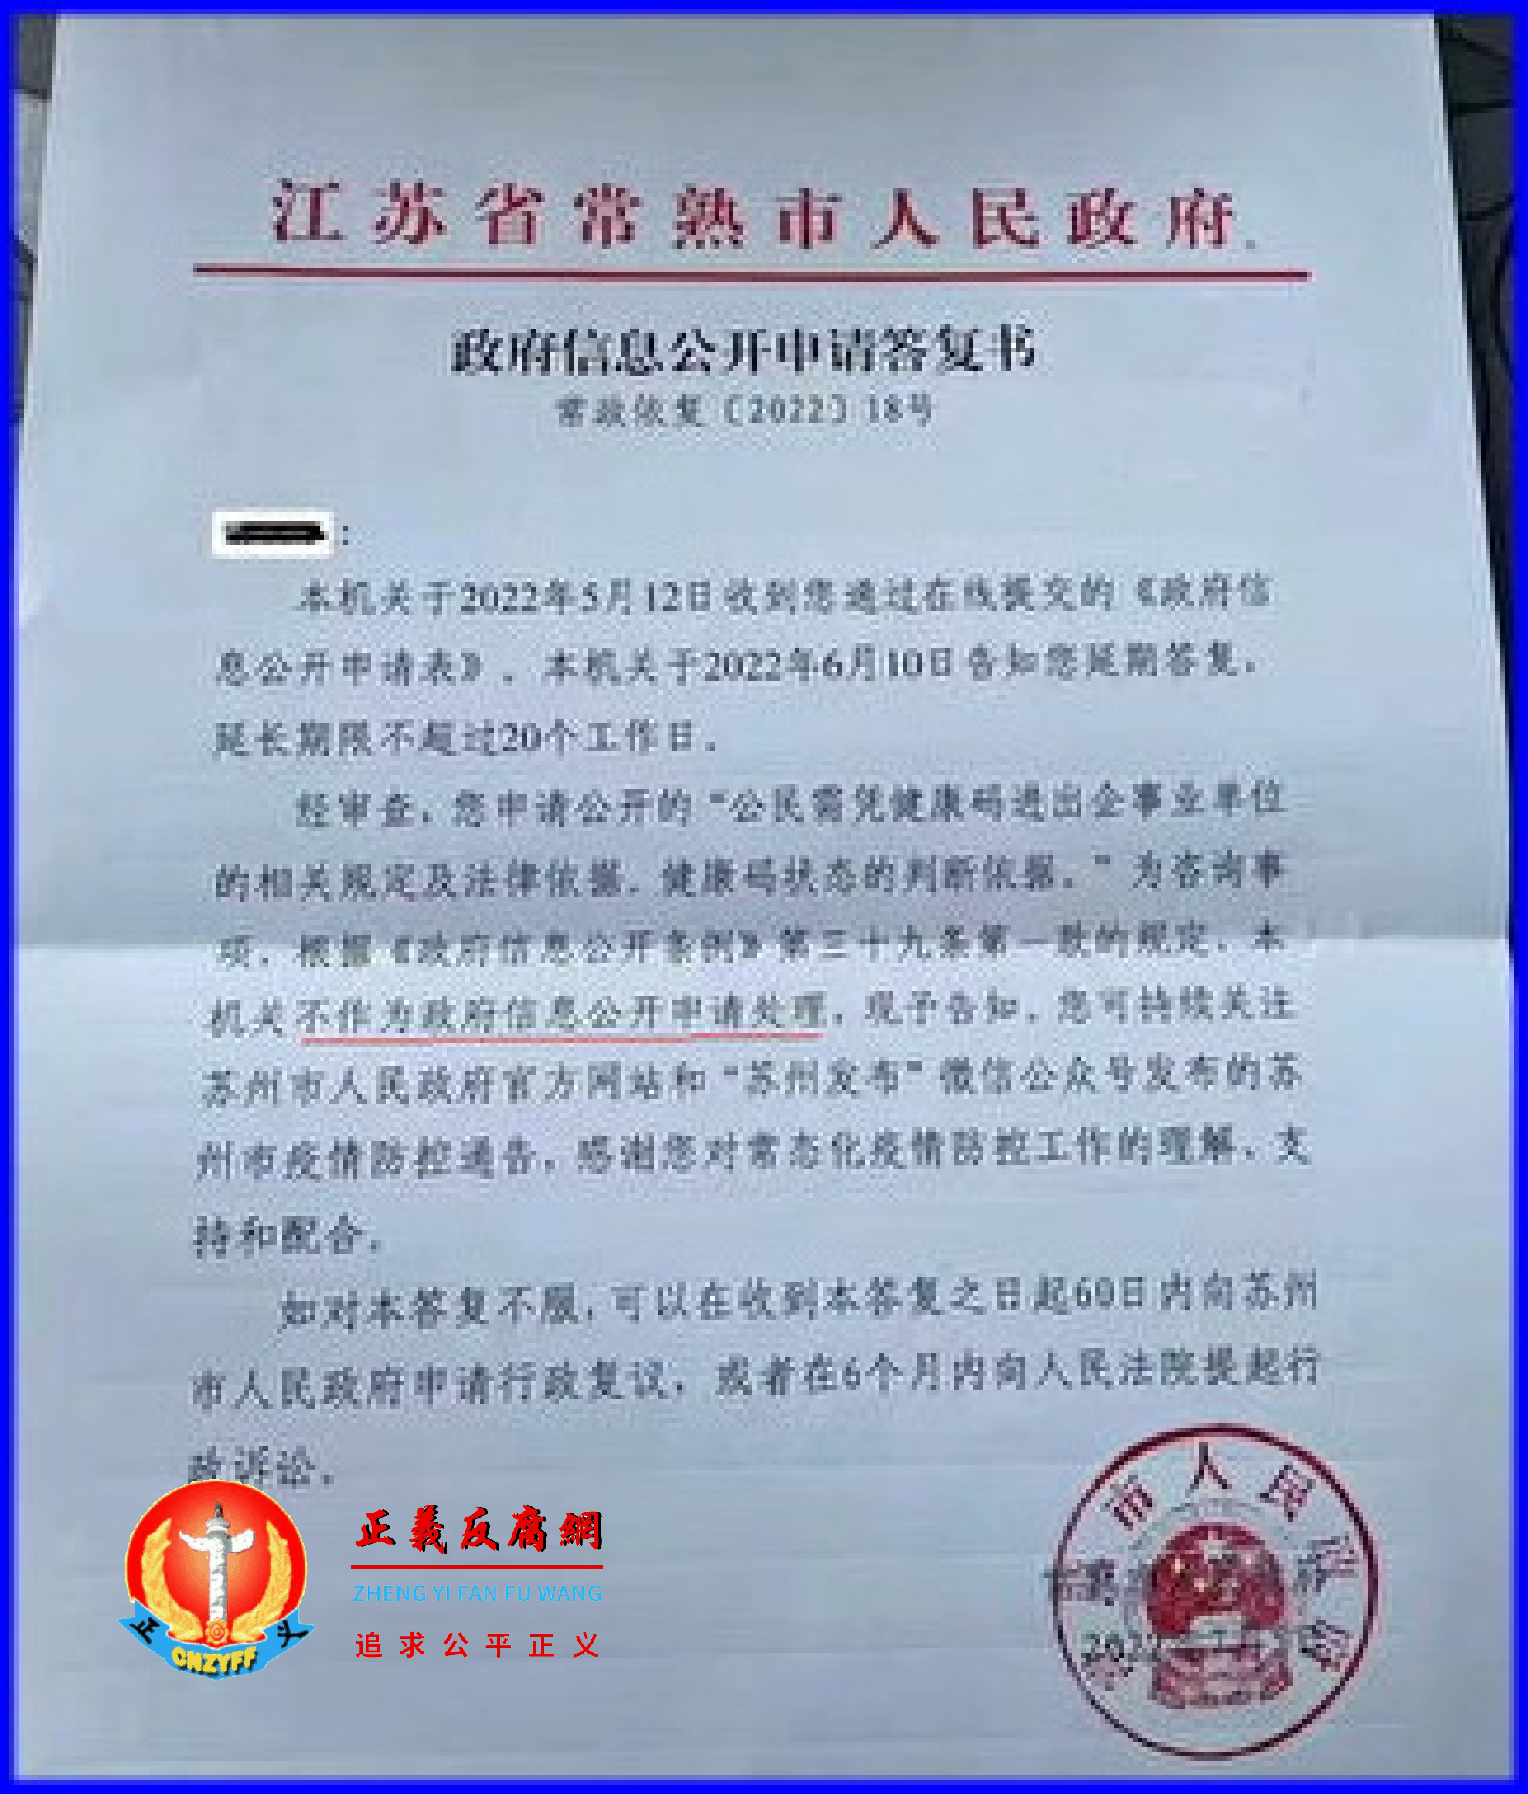 健康码变黄码 江苏公民申请政府信息公开答复── “不予公开”？